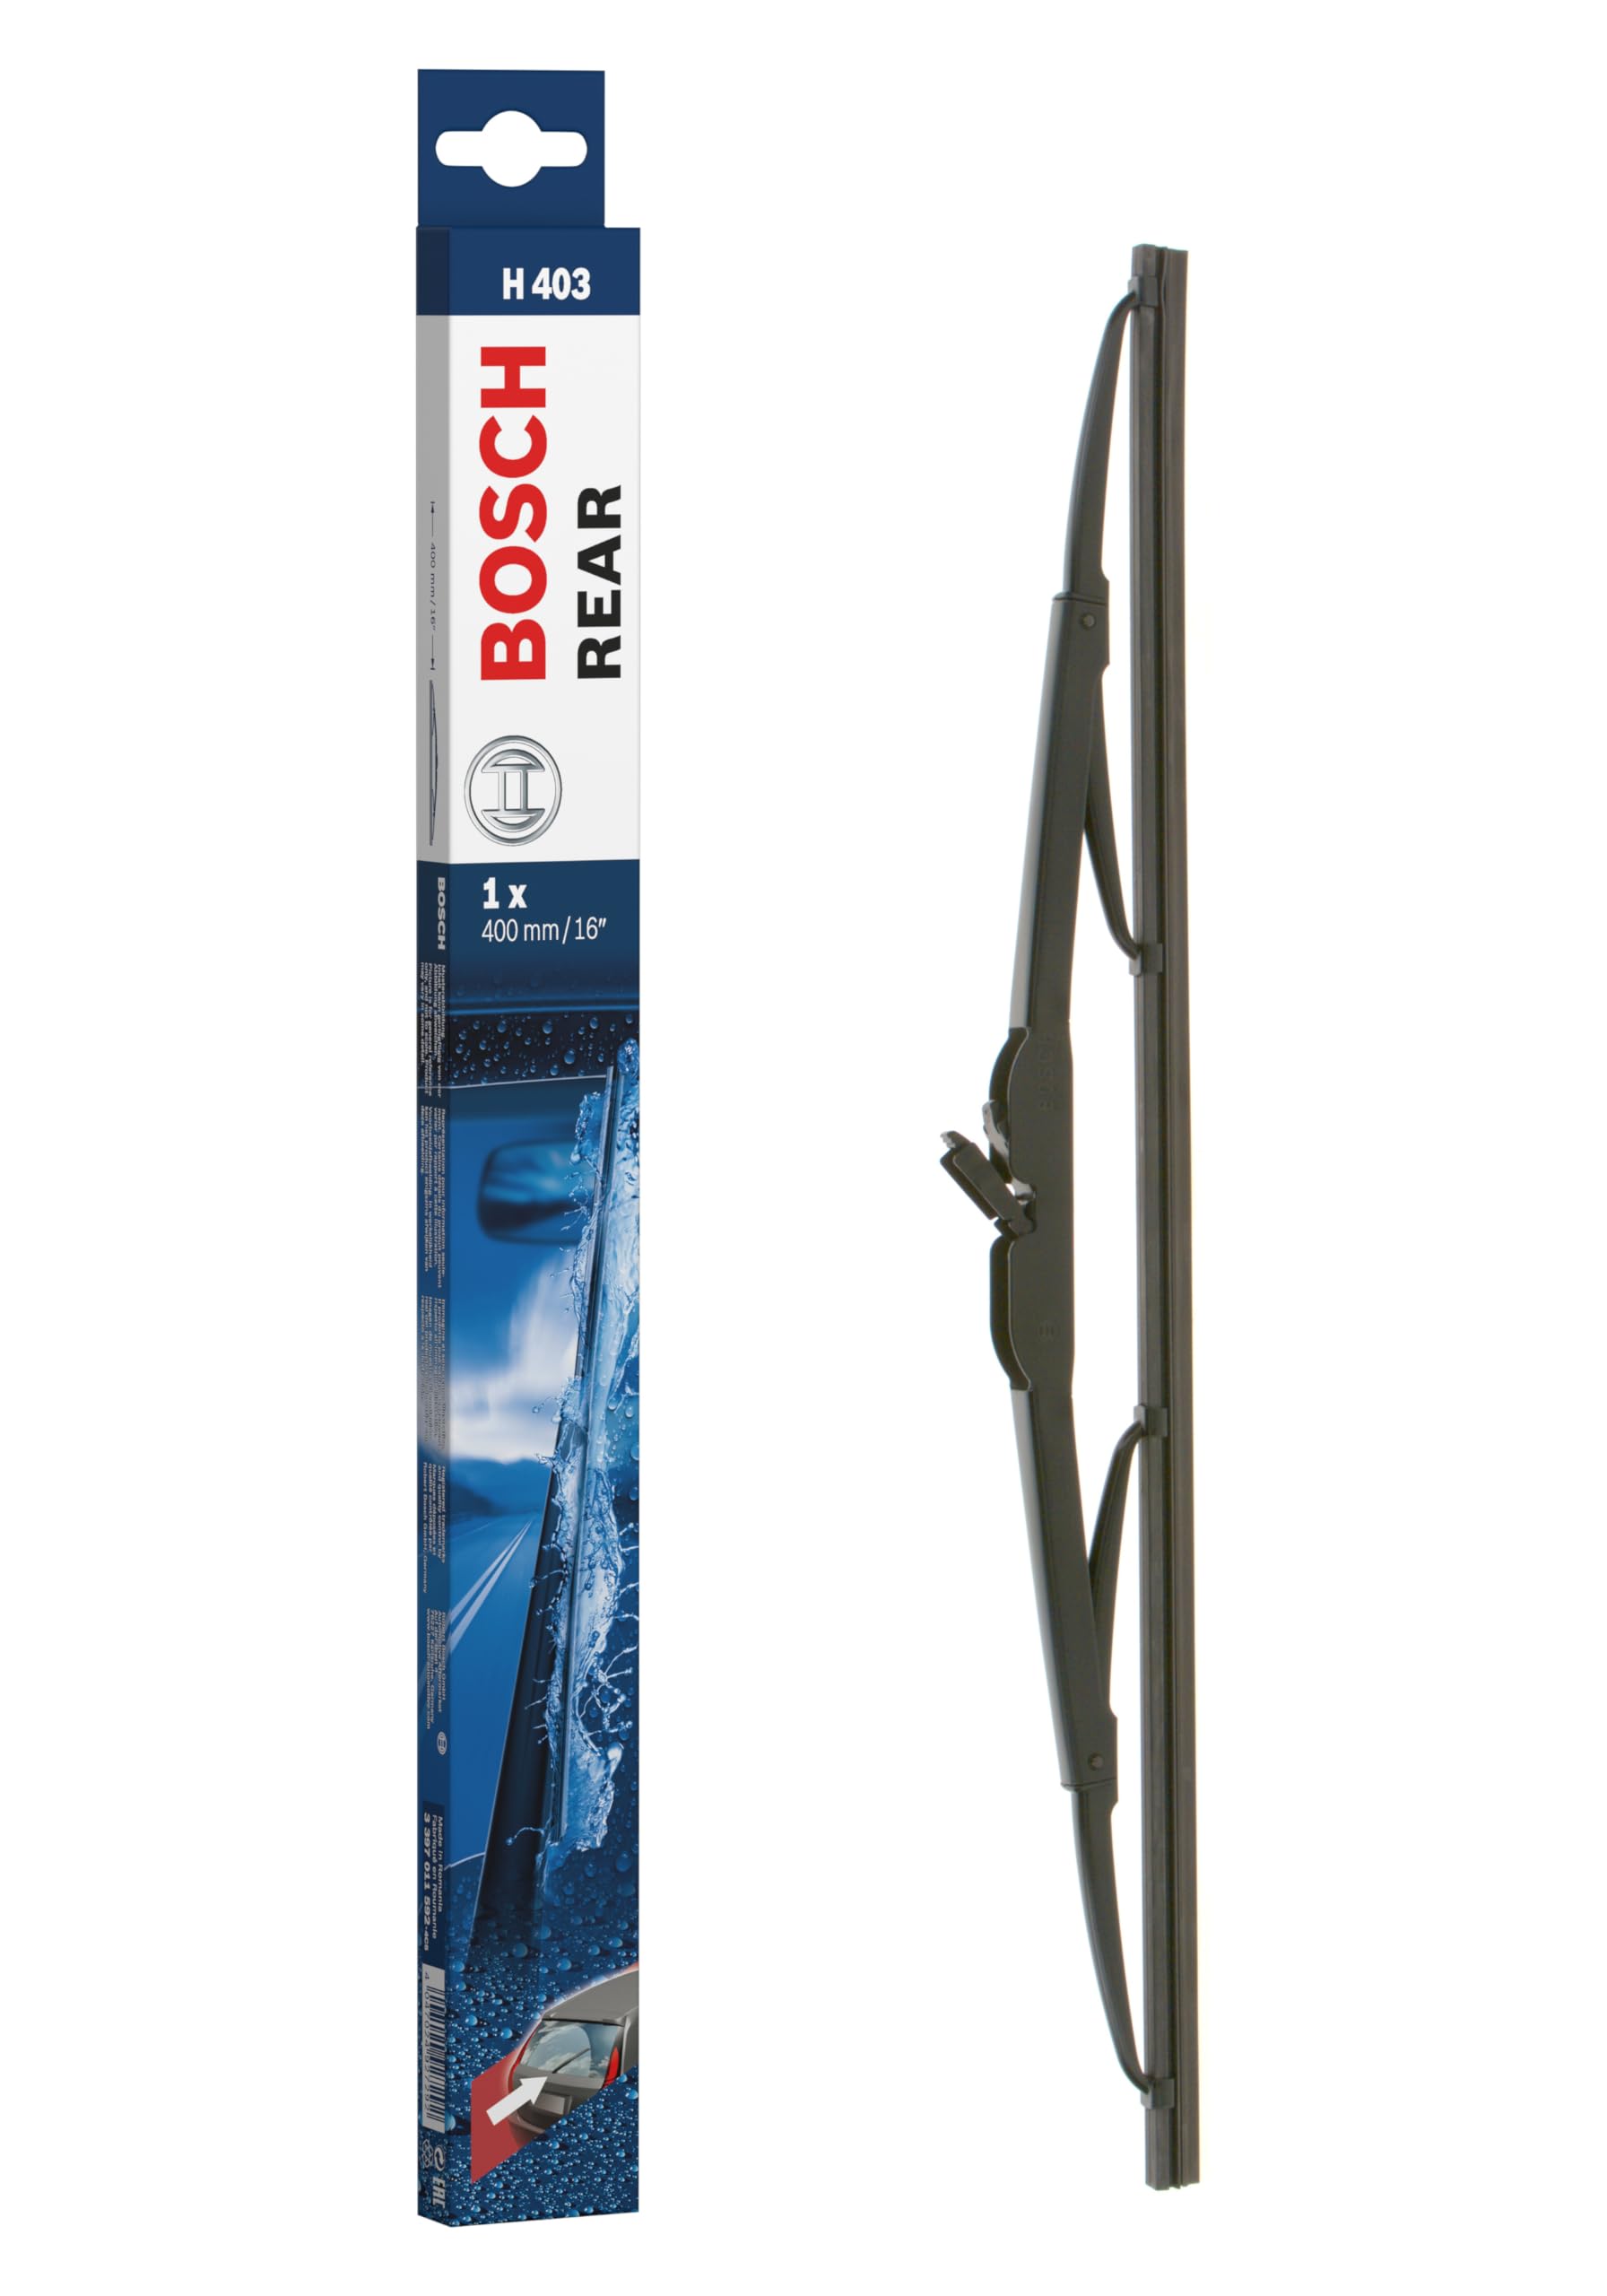 Bosch Scheibenwischer Rear H403, Länge: 400mm – Scheibenwischer für Heckscheibe von Bosch Automotive